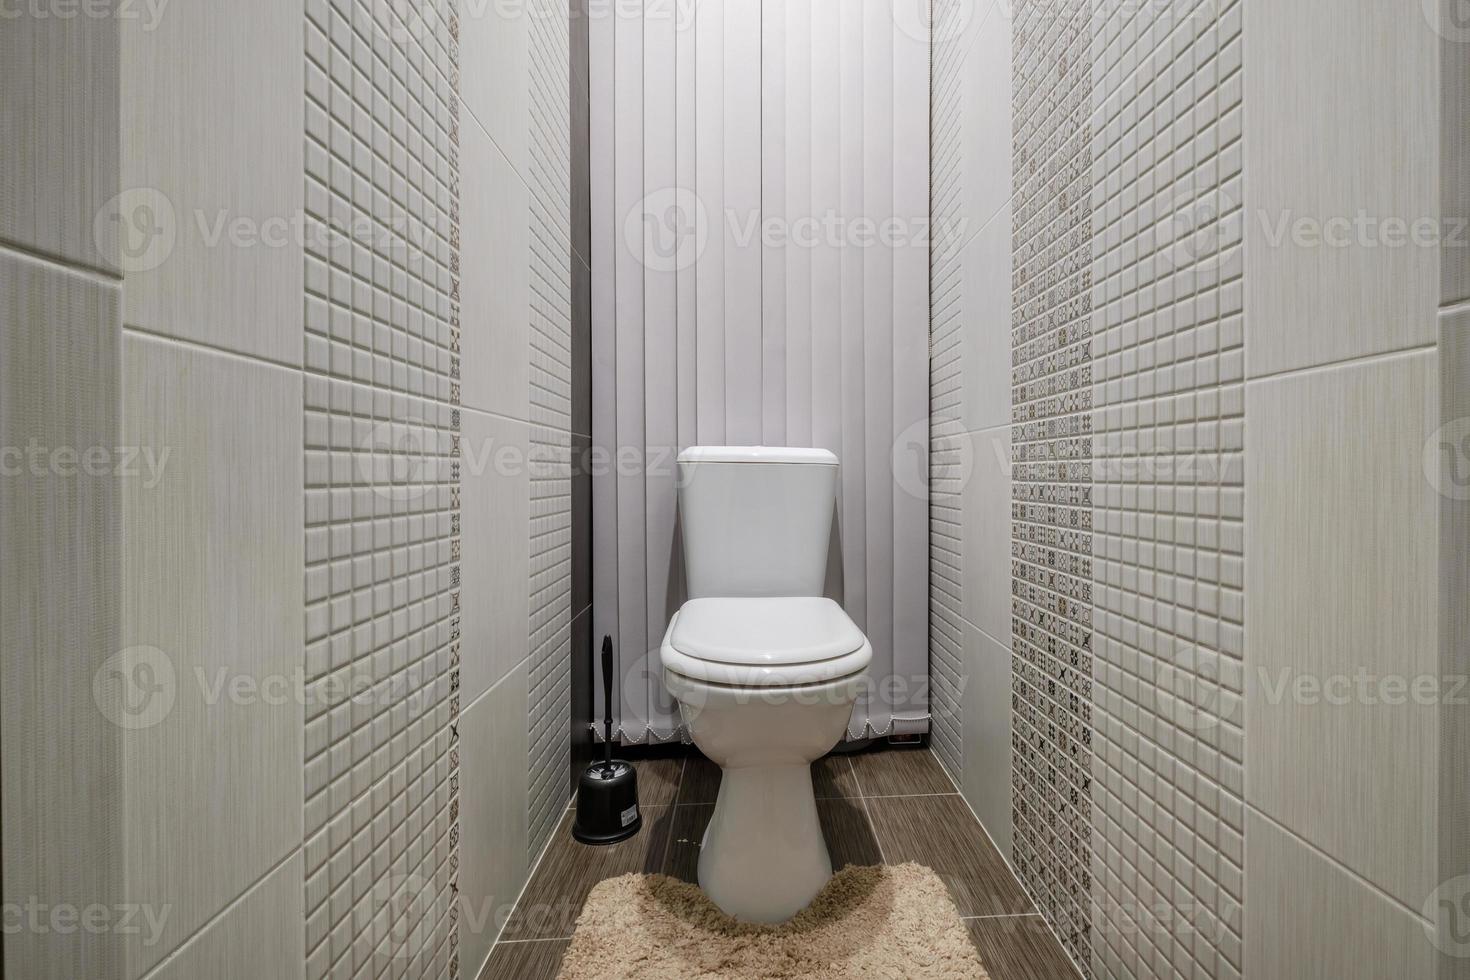 Toilette und Detail einer Eckduschkabine mit wandmontierter Duschvorrichtung foto